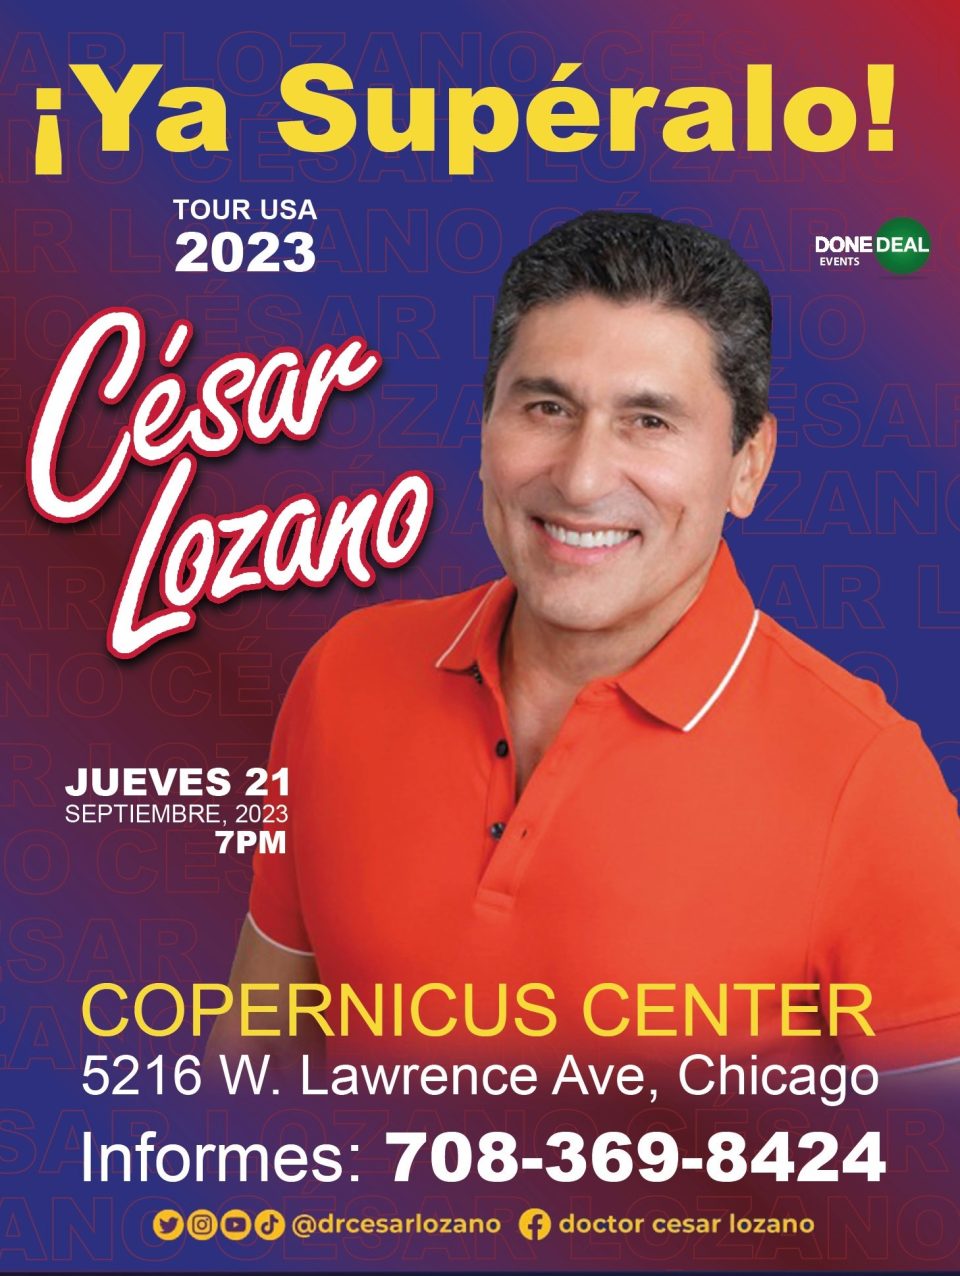 CONFERENCIA DEL DR. CÉSAR LOZANO 2023 ¡YA SUPÉRALO! Copernicus Center